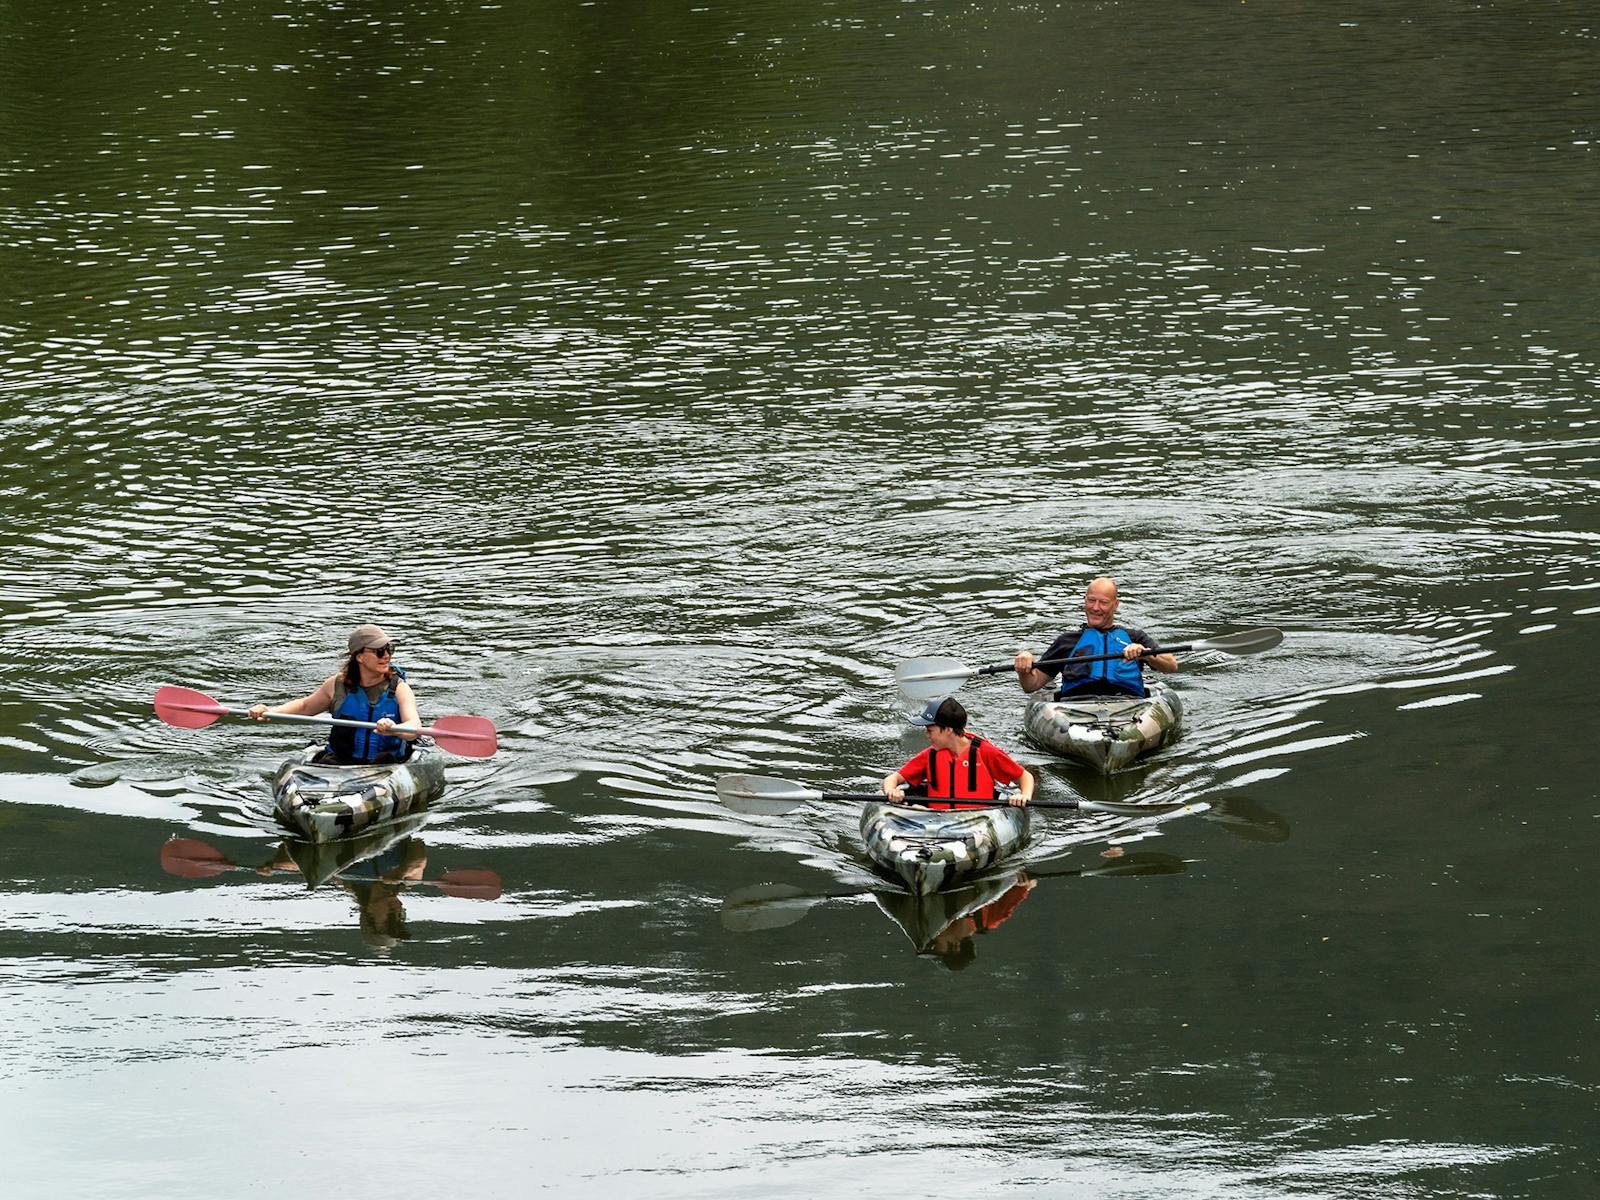 three kayakers on Jamieson River